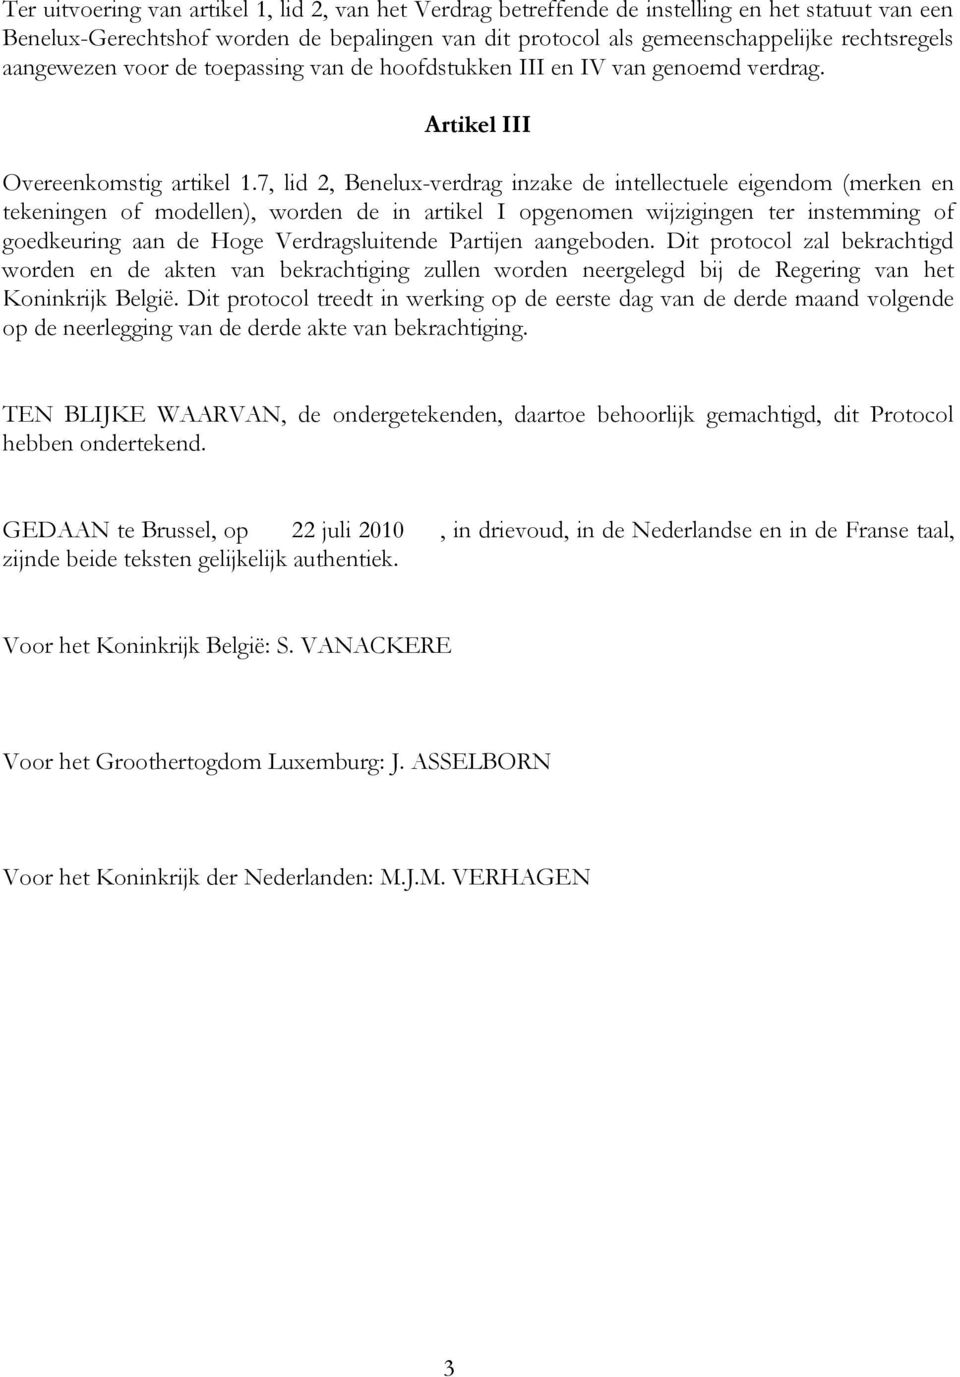 7, lid 2, Benelux-verdrag inzake de intellectuele eigendom (merken en tekeningen of modellen), worden de in artikel I opgenomen wijzigingen ter instemming of goedkeuring aan de Hoge Verdragsluitende